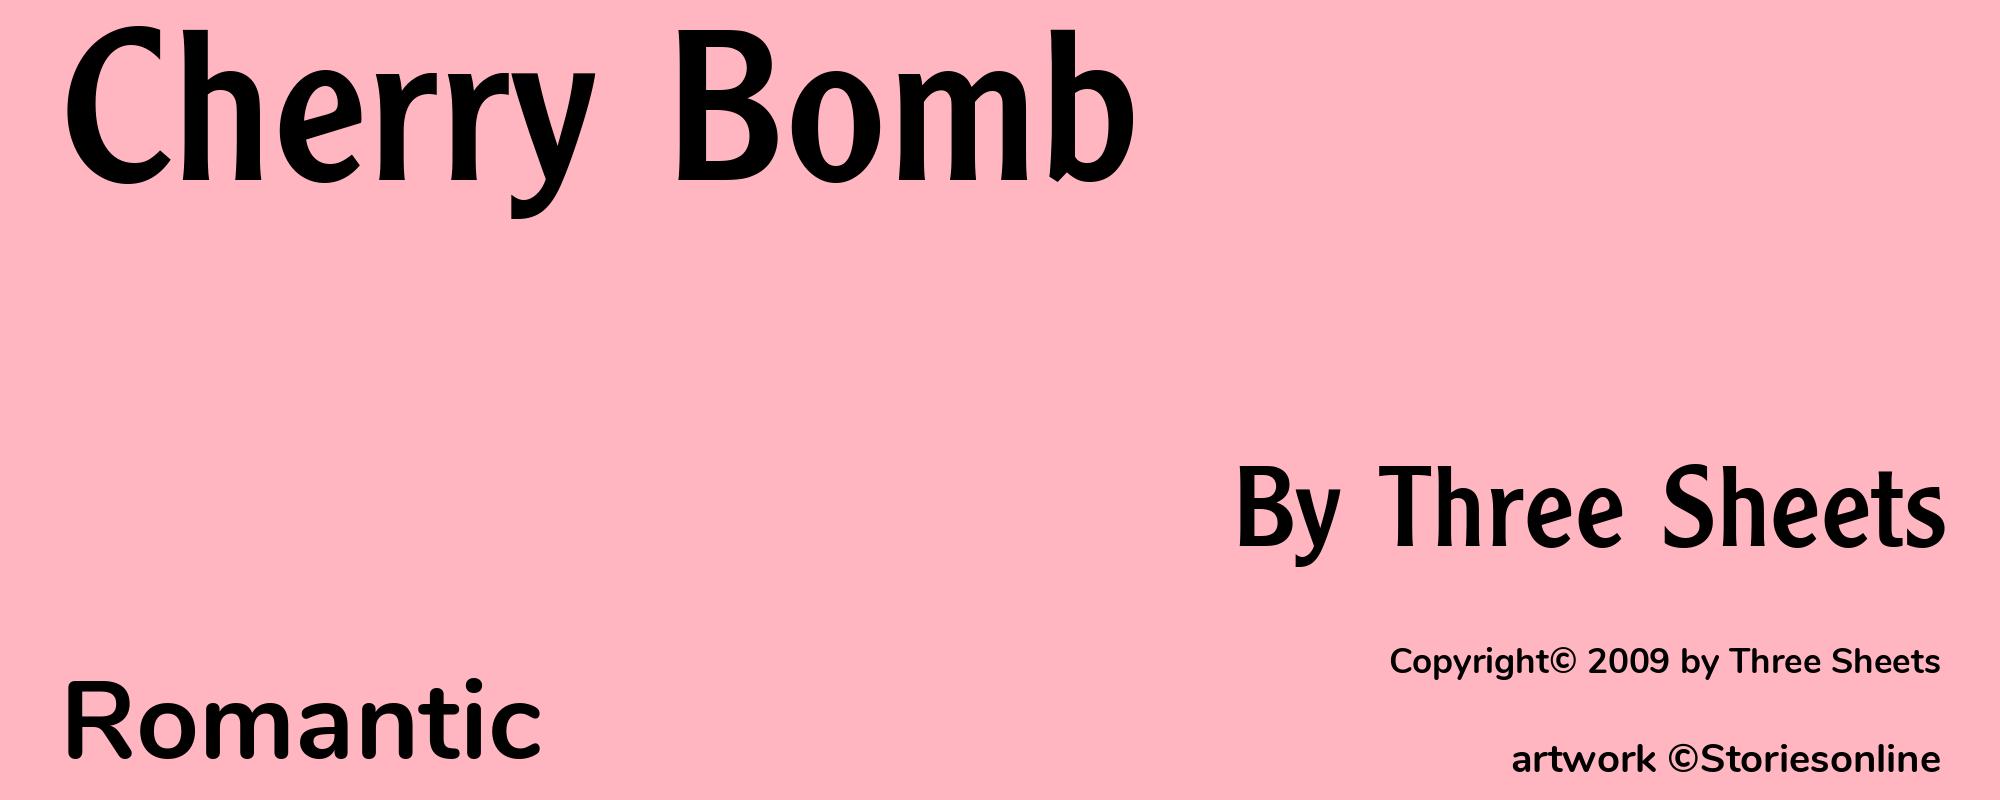 Cherry Bomb - Cover